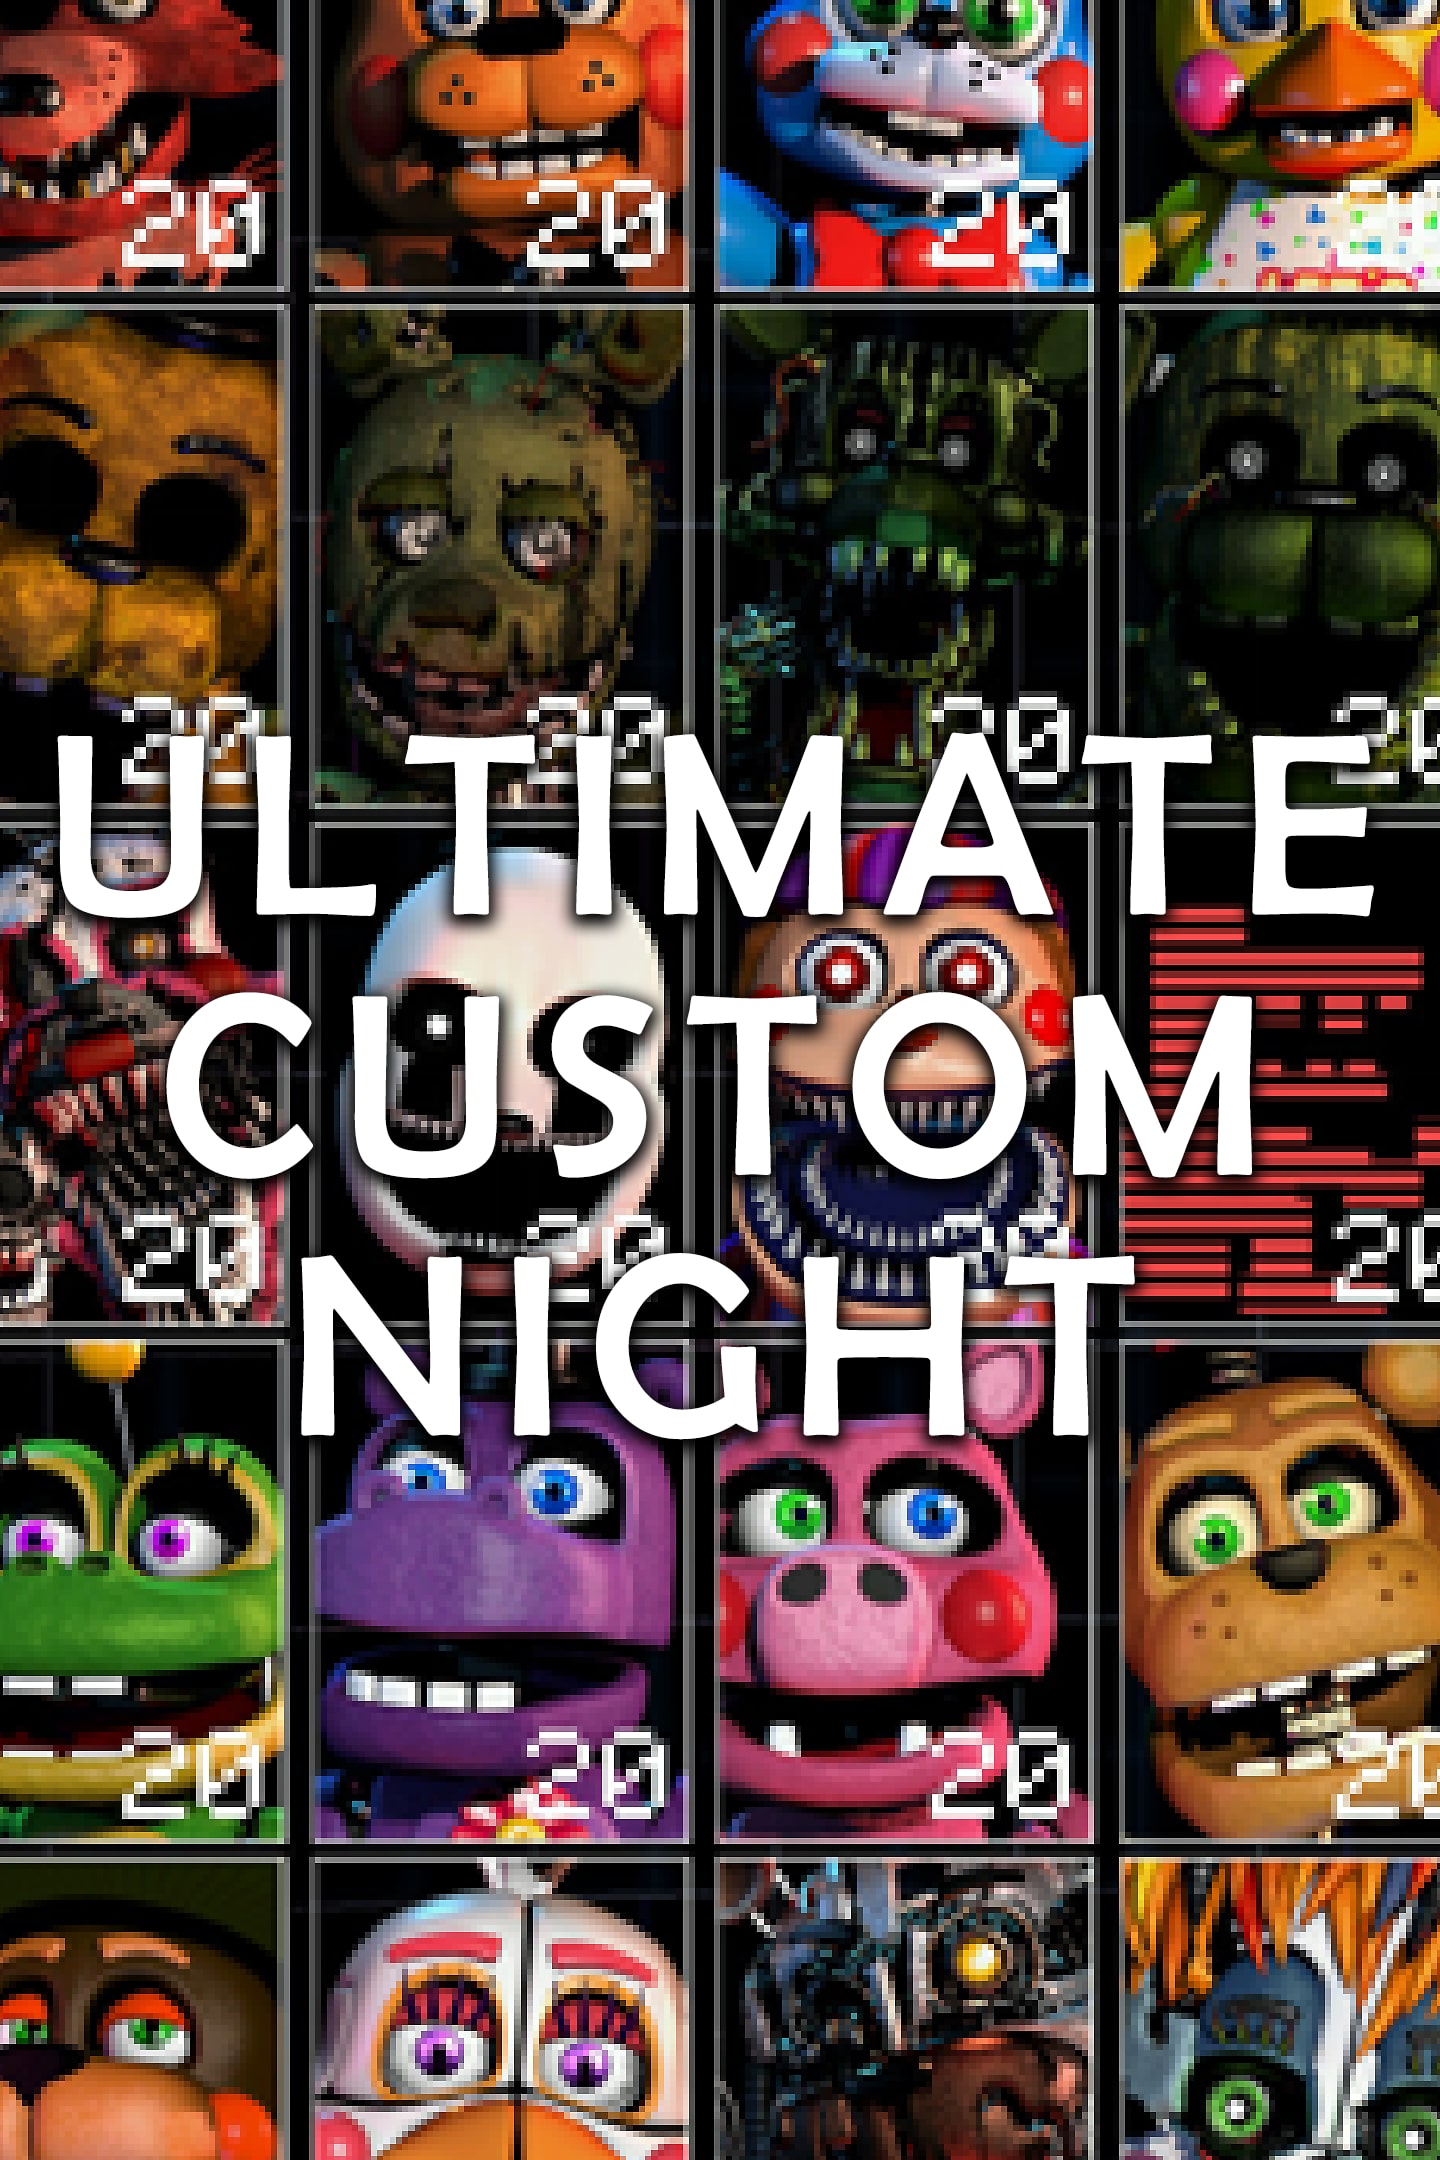 Ultimate Custom Night para iPhone - Download